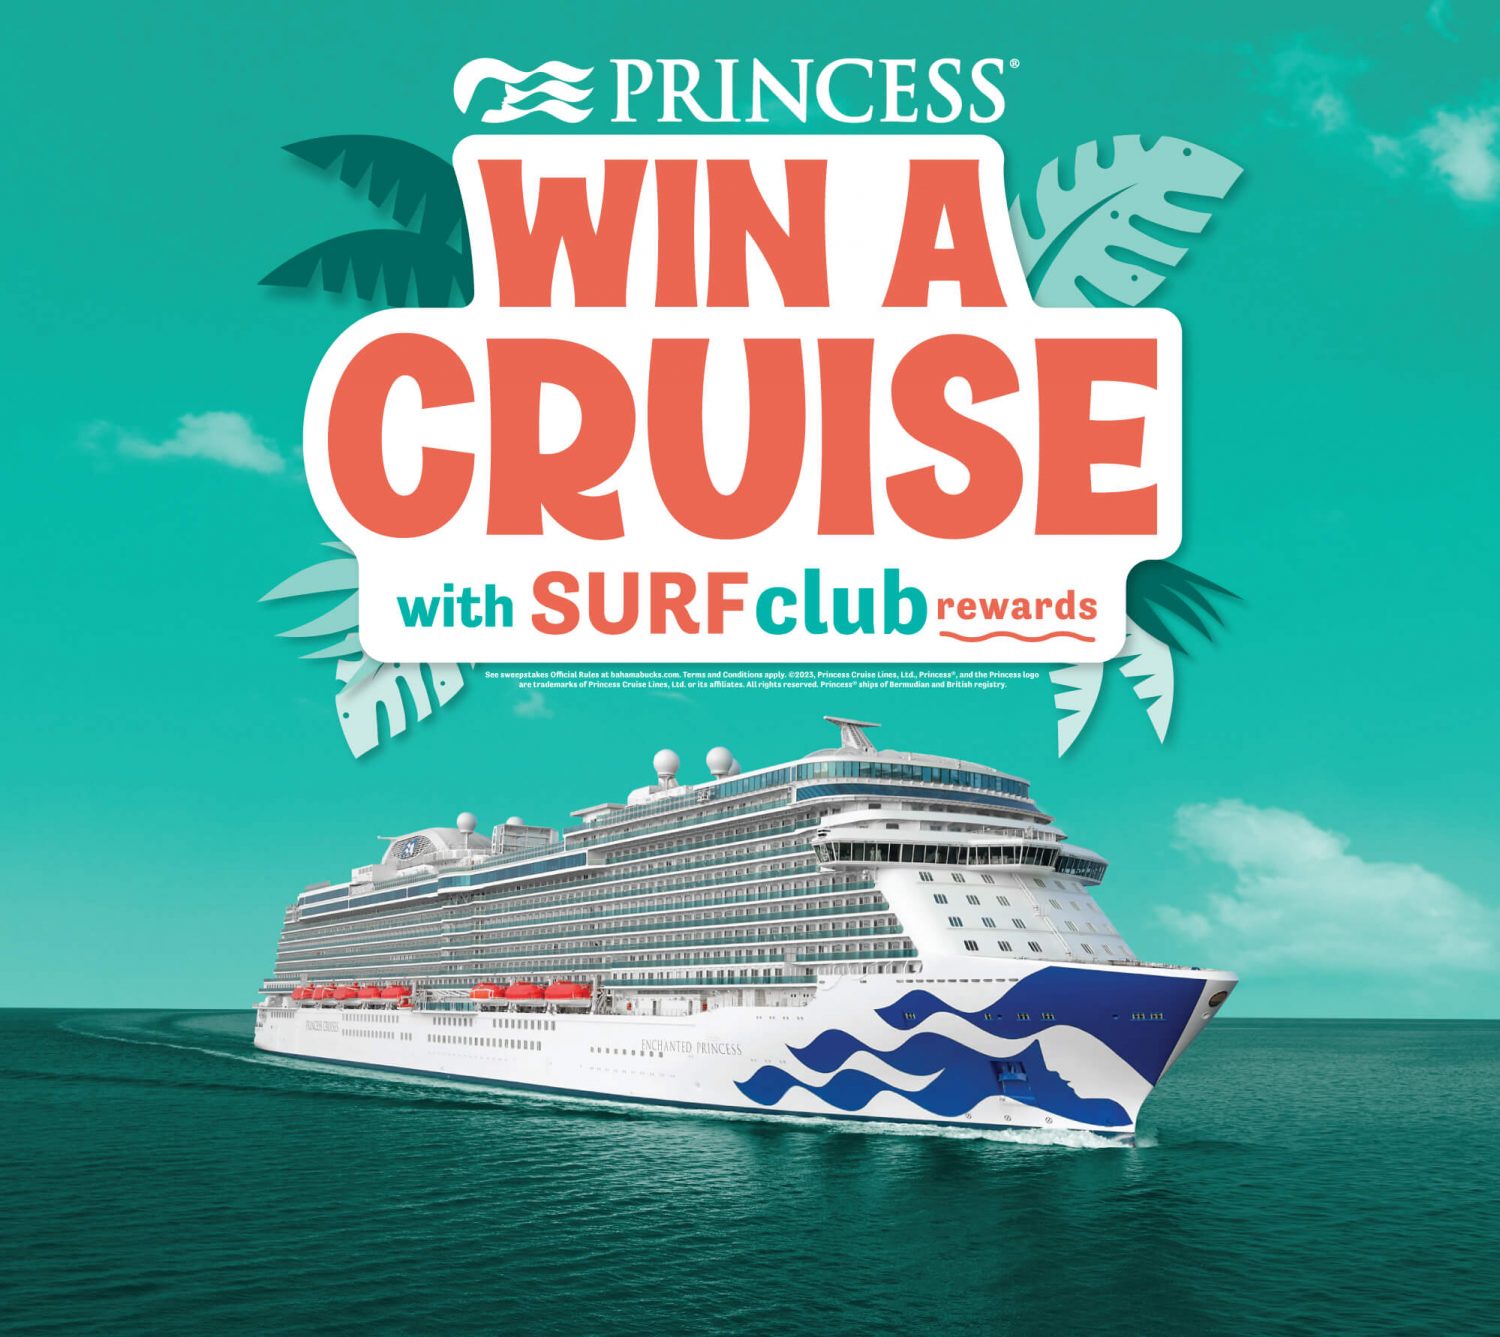 Princess-Cruise-Surf-Club-Rewards-Sweepstakes